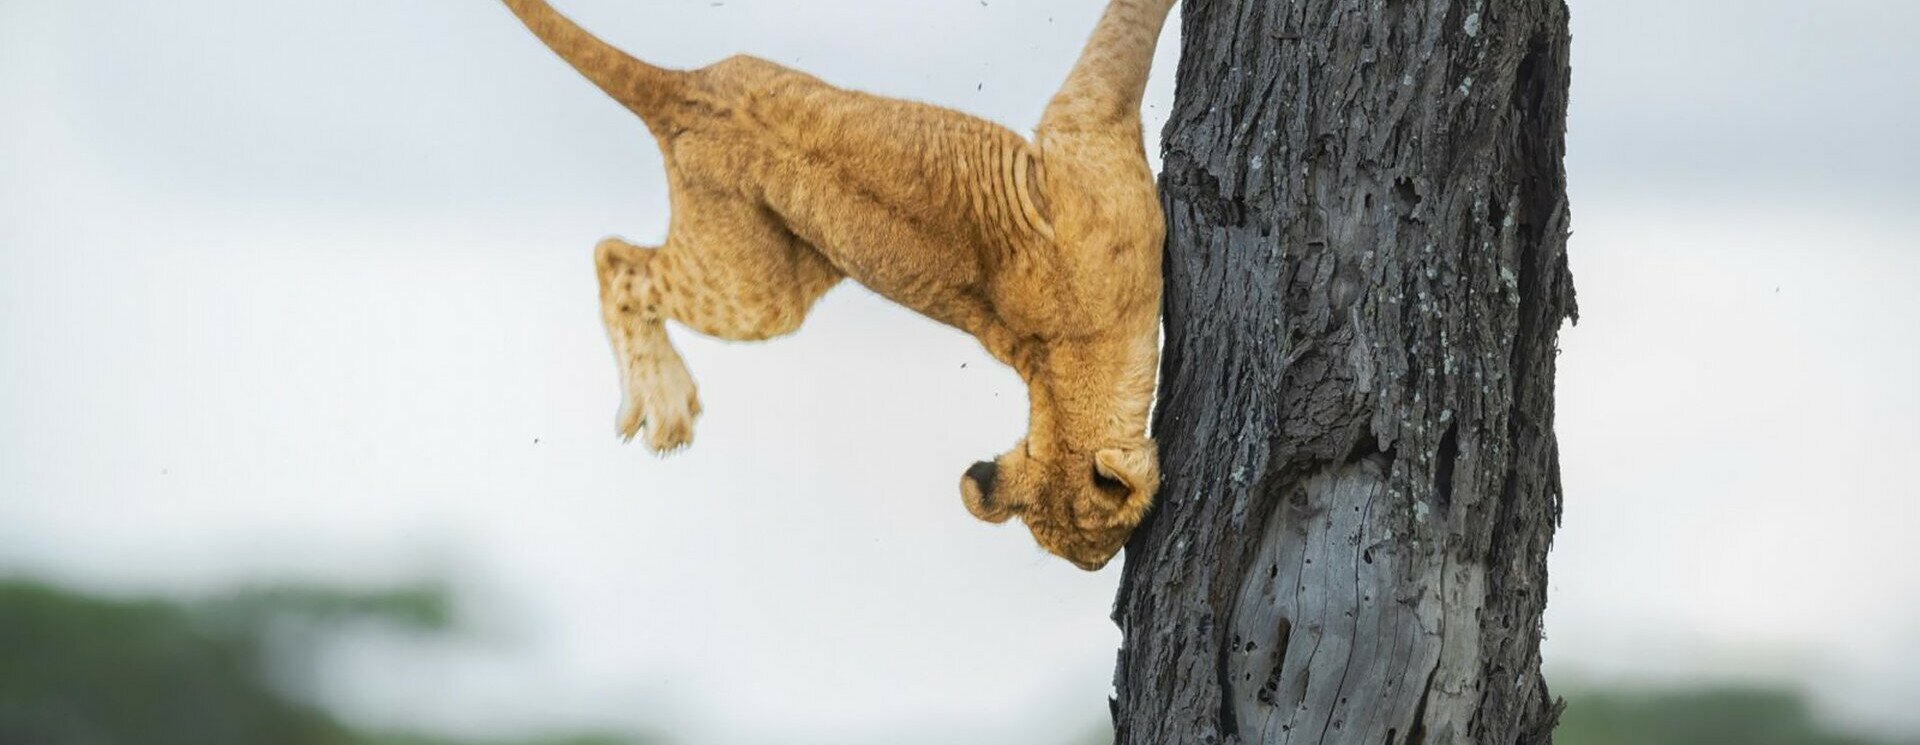 Fáról lebucskázó oroszlánkölyök lett a világ legviccesebb állatfotója